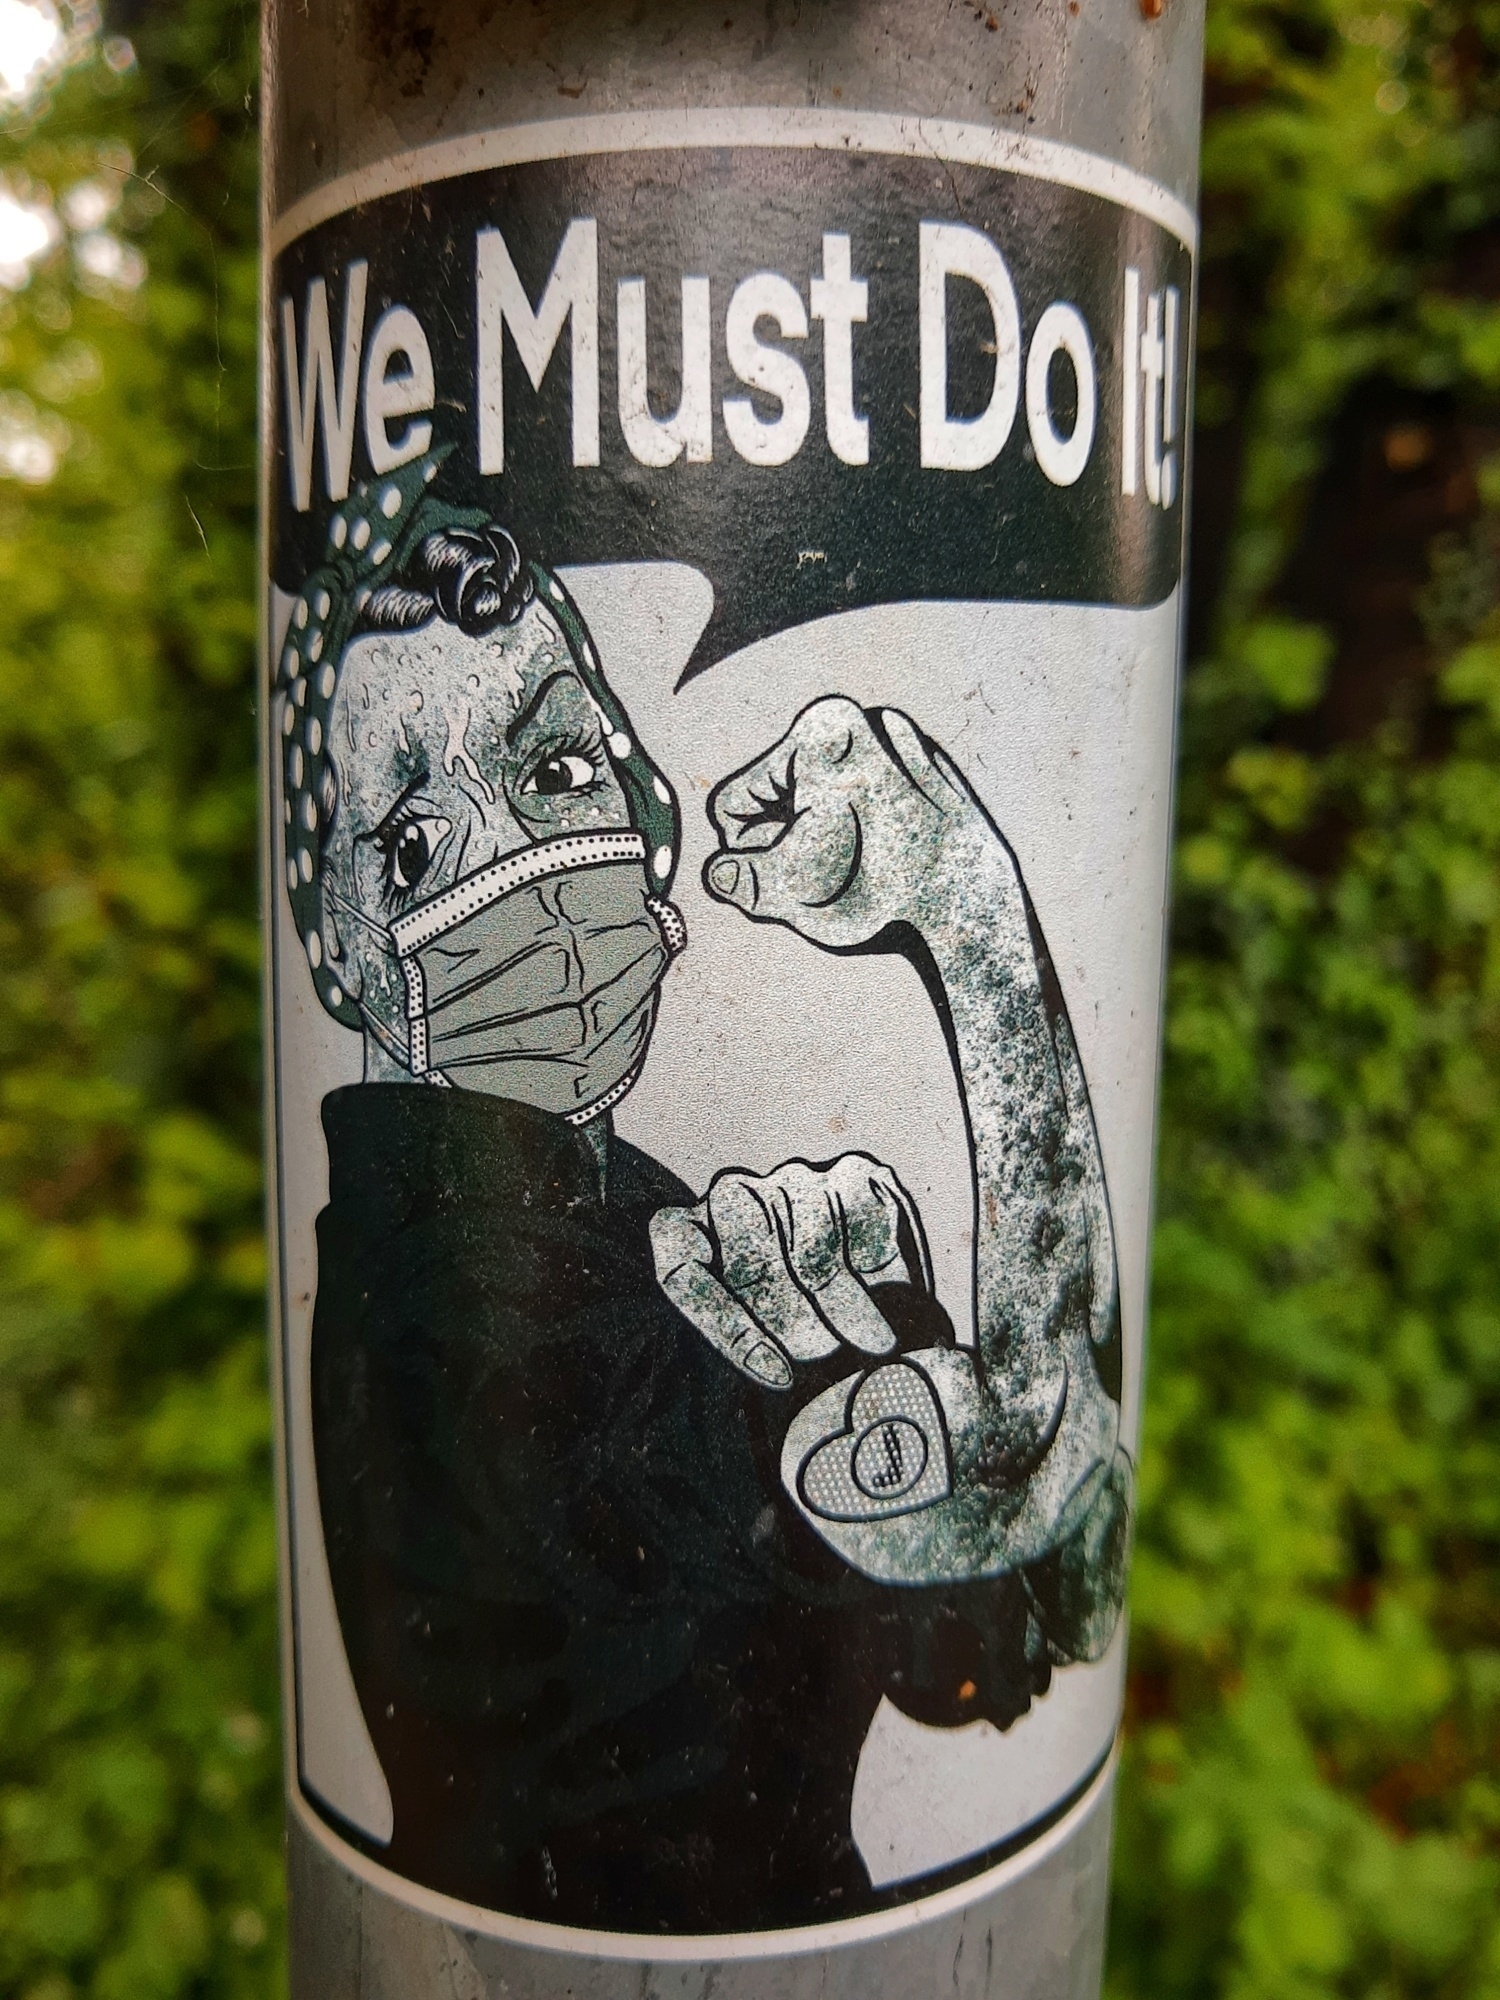 Sticker con donna con muscolo del braccio tirato ed una mascherina in volto. Sopra la scritta: We must do it